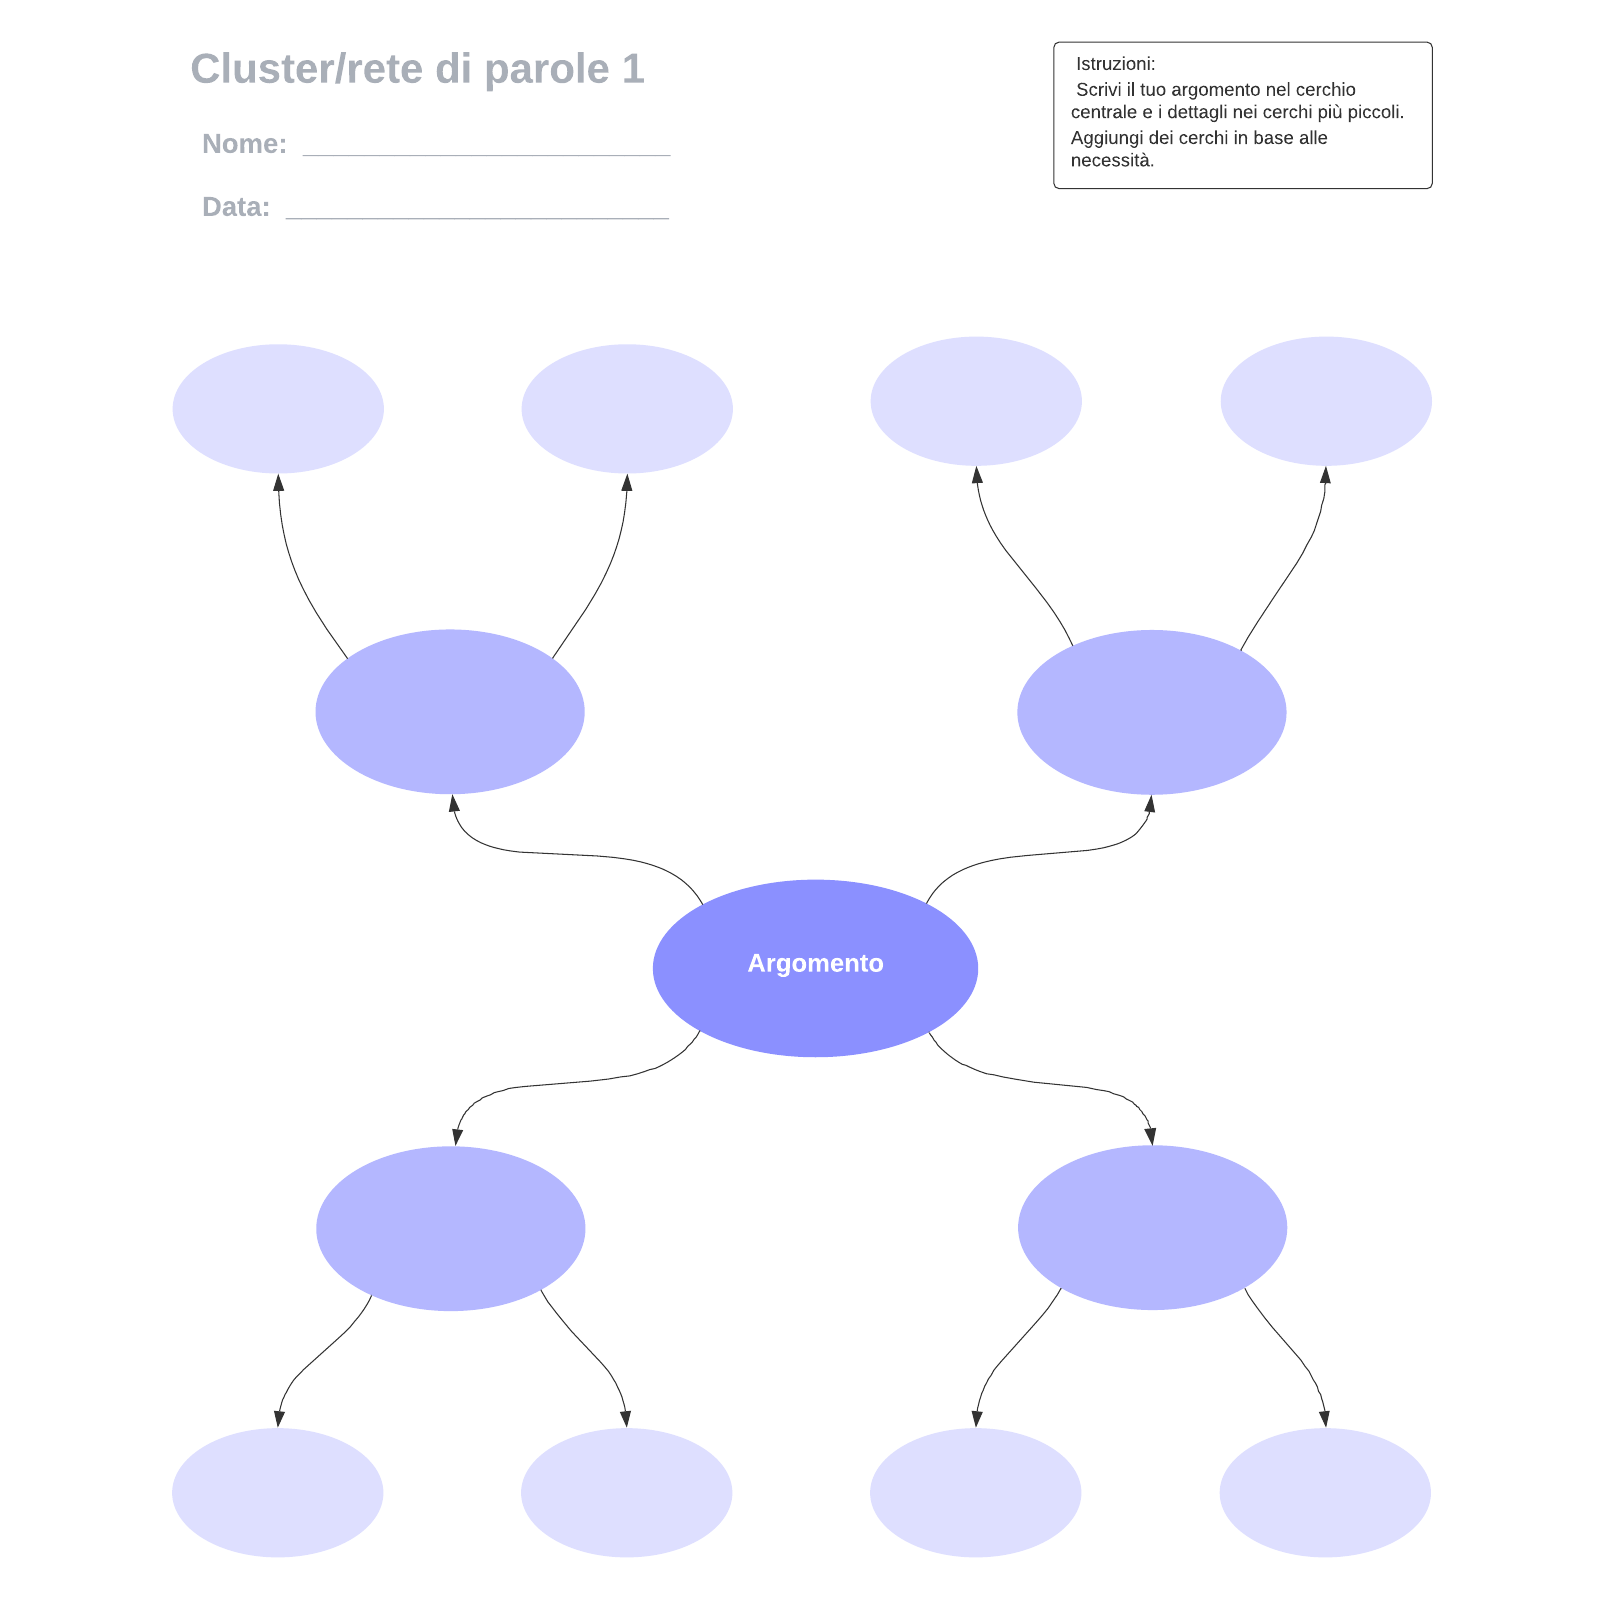 Cluster/rete di parole 1 example